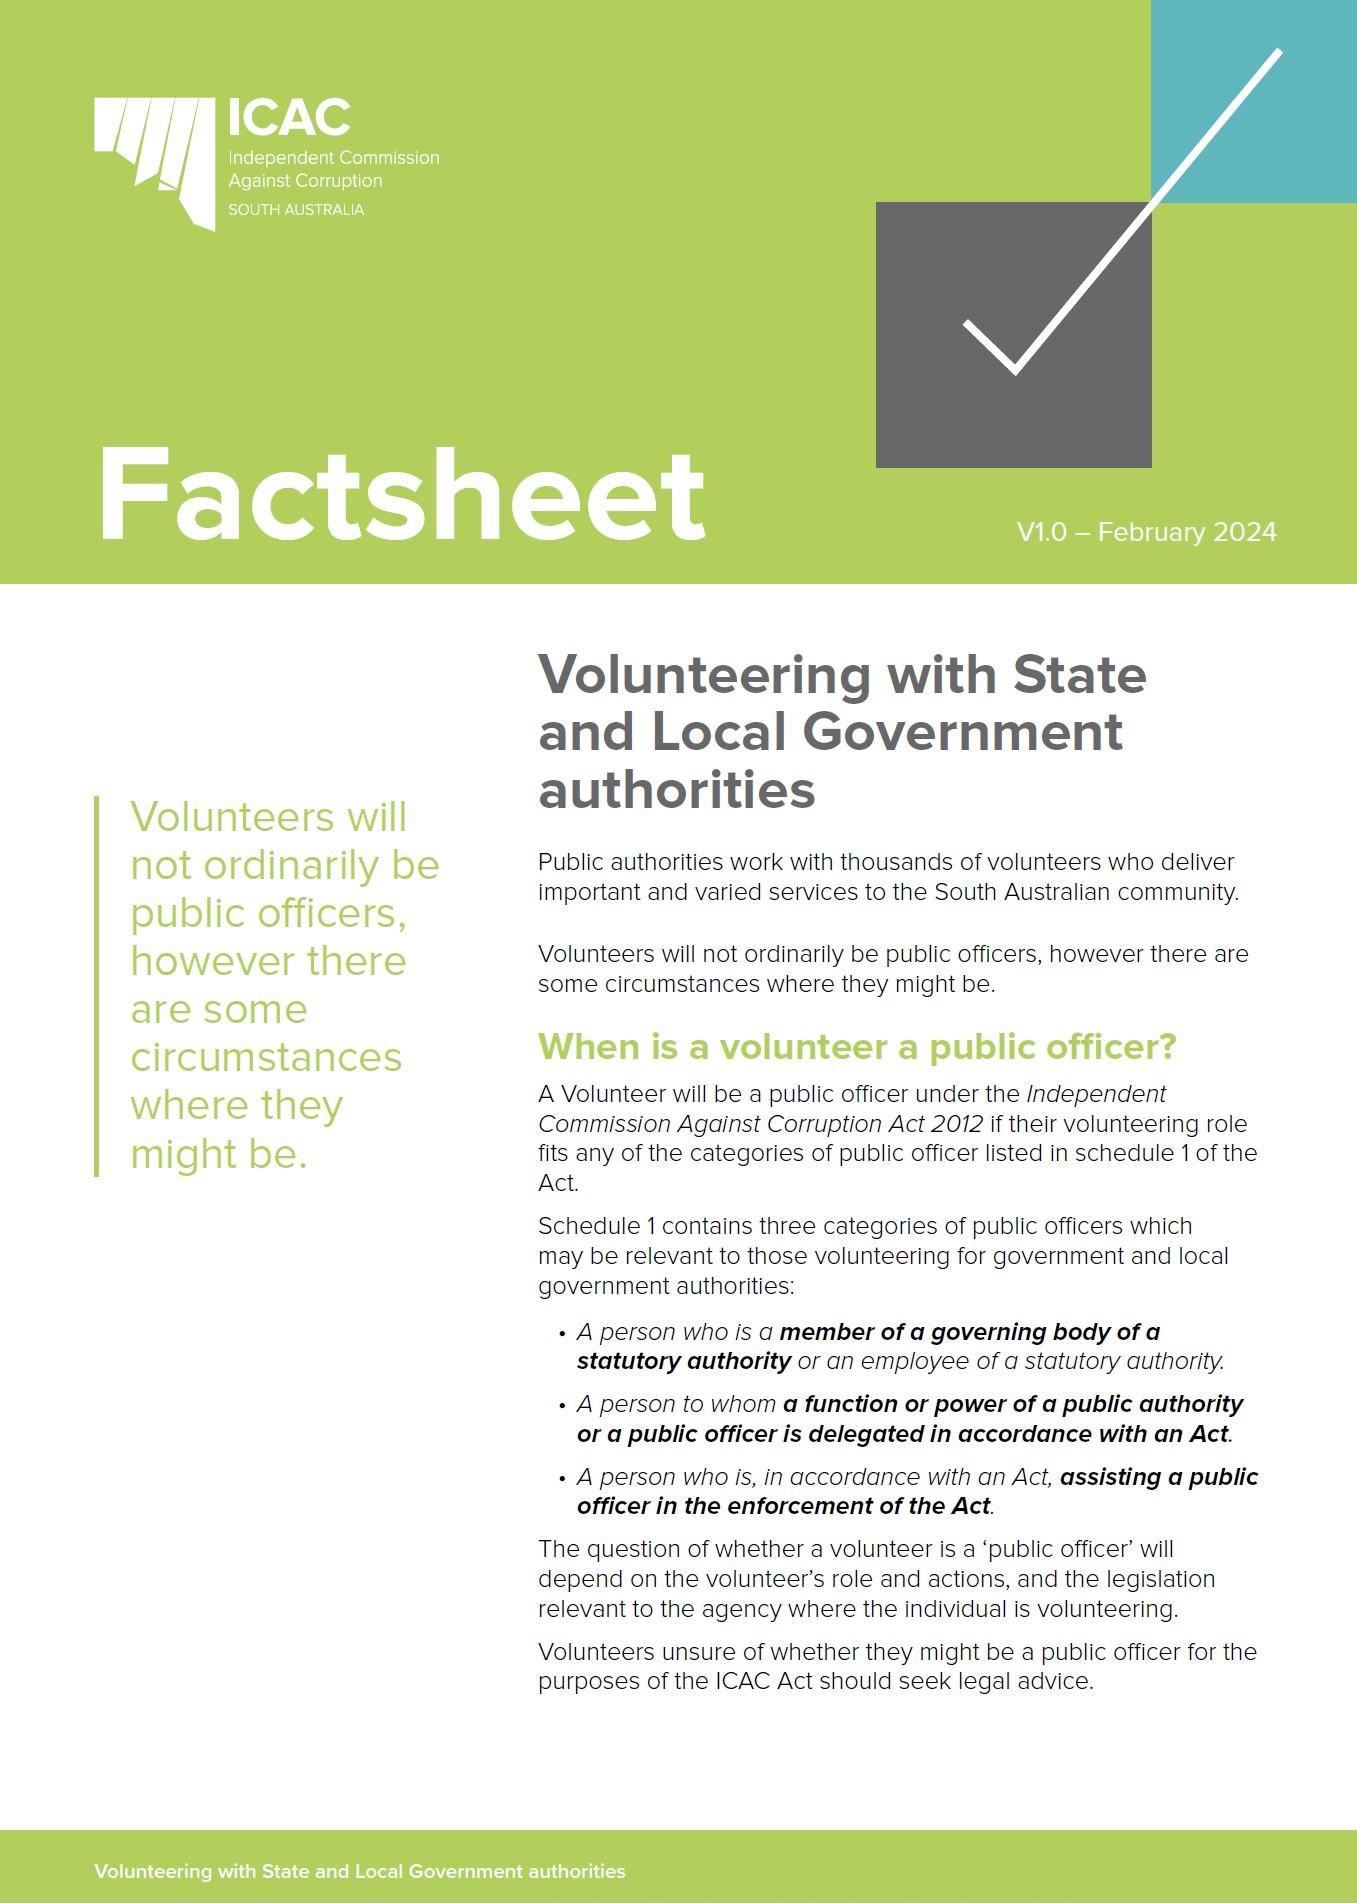 Cover of Volunteer factsheet